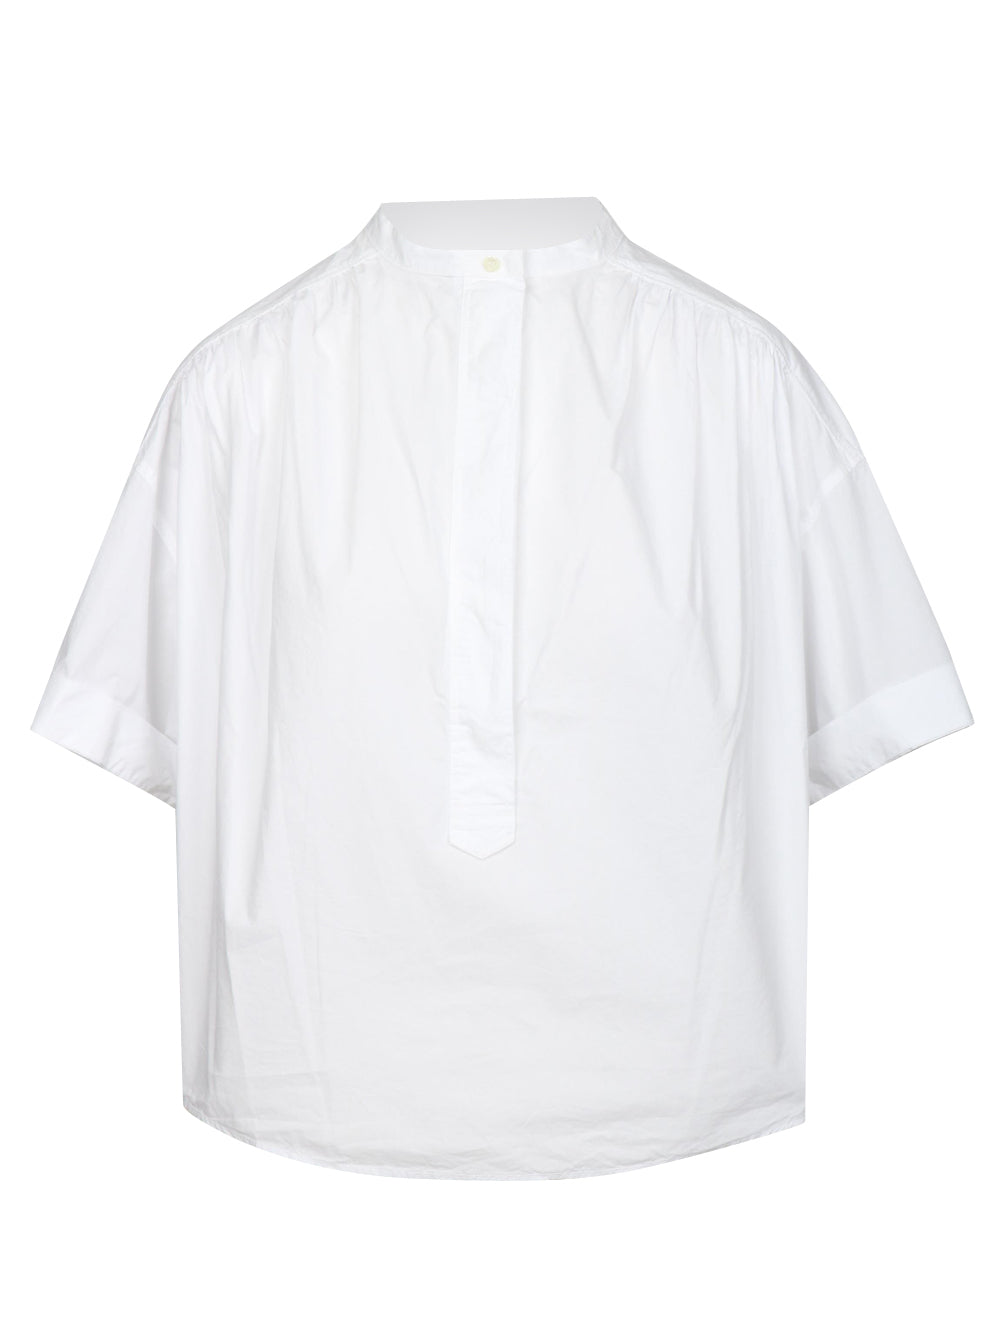 POMANDÈRE Blusa in Cotone Bianca con Maniche Corte Bianco